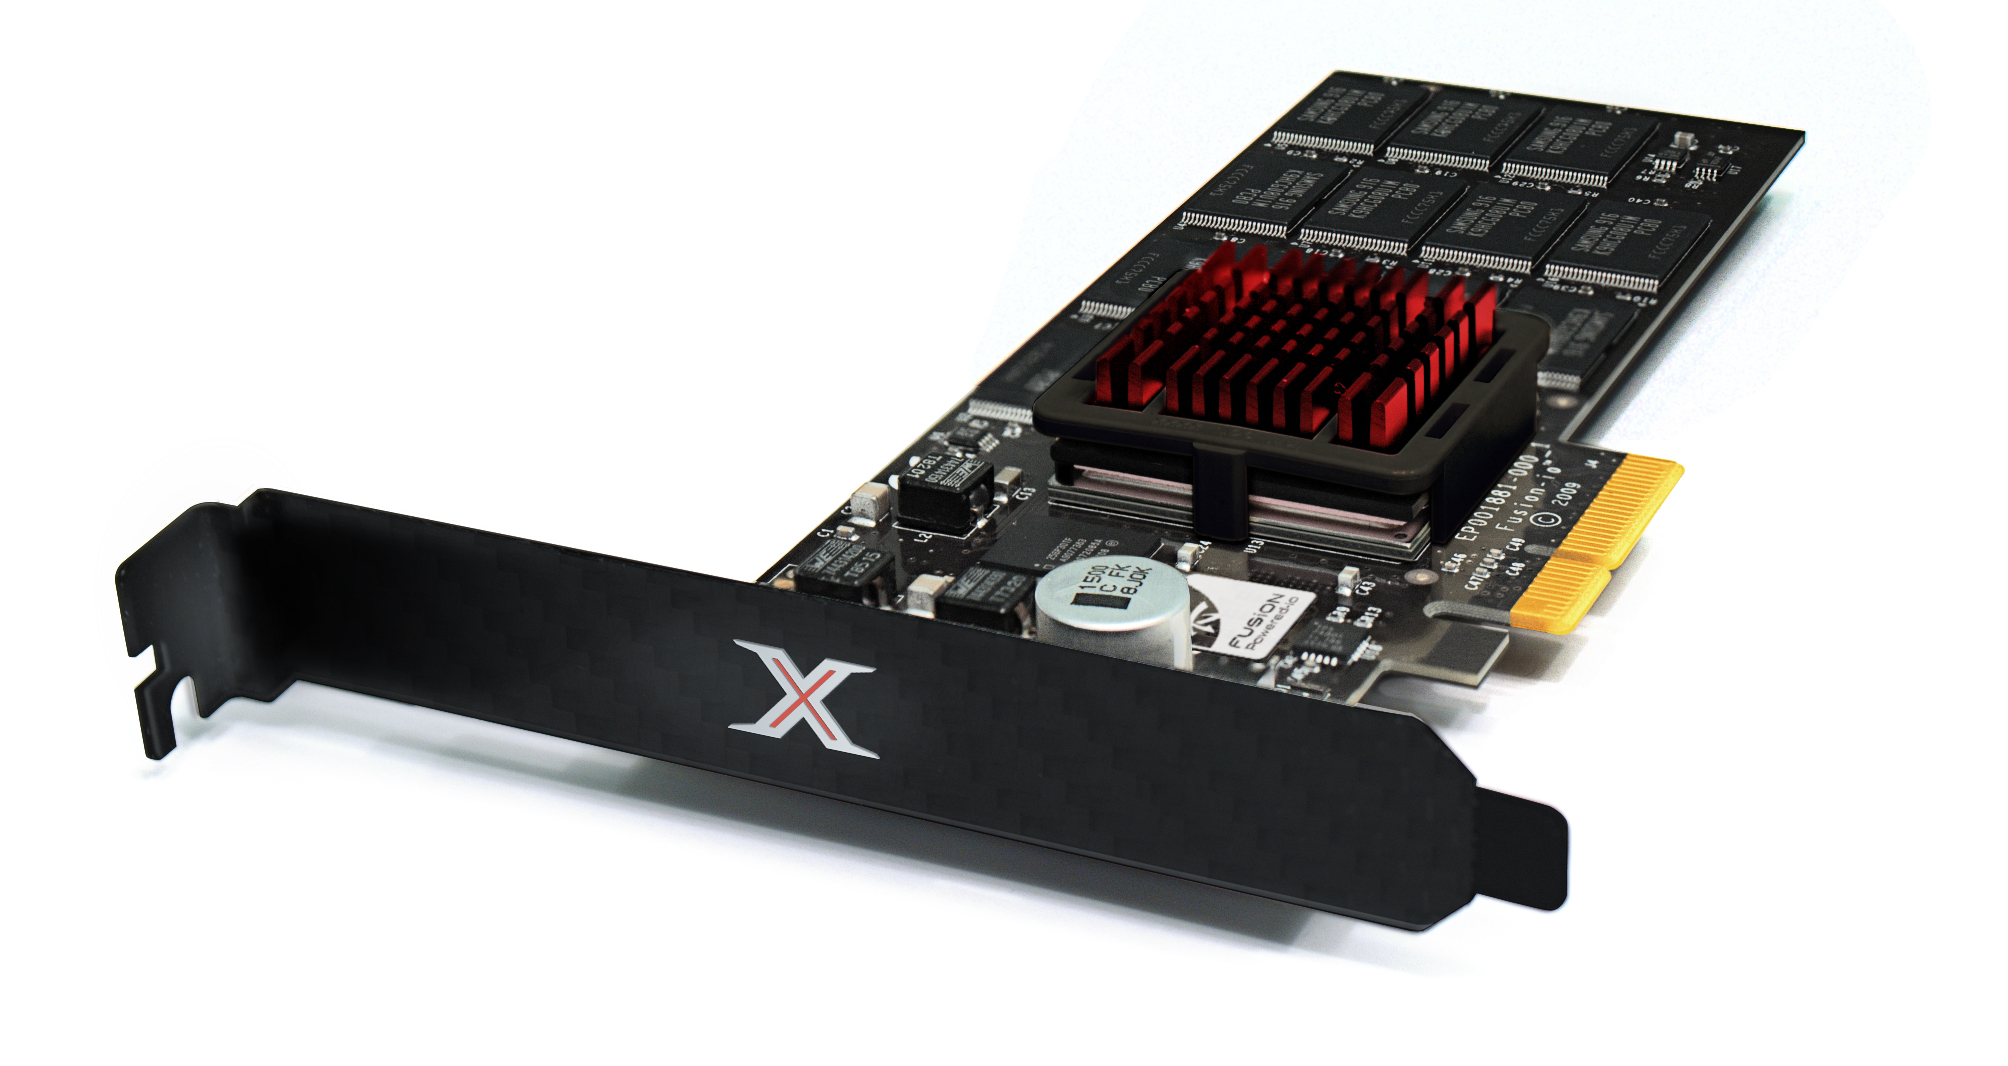 Immagine pubblicata in relazione al seguente contenuto: Fusion-io presenta il drive SSD per bus PCI-Express ioXtreme | Nome immagine: news10592_1.jpg